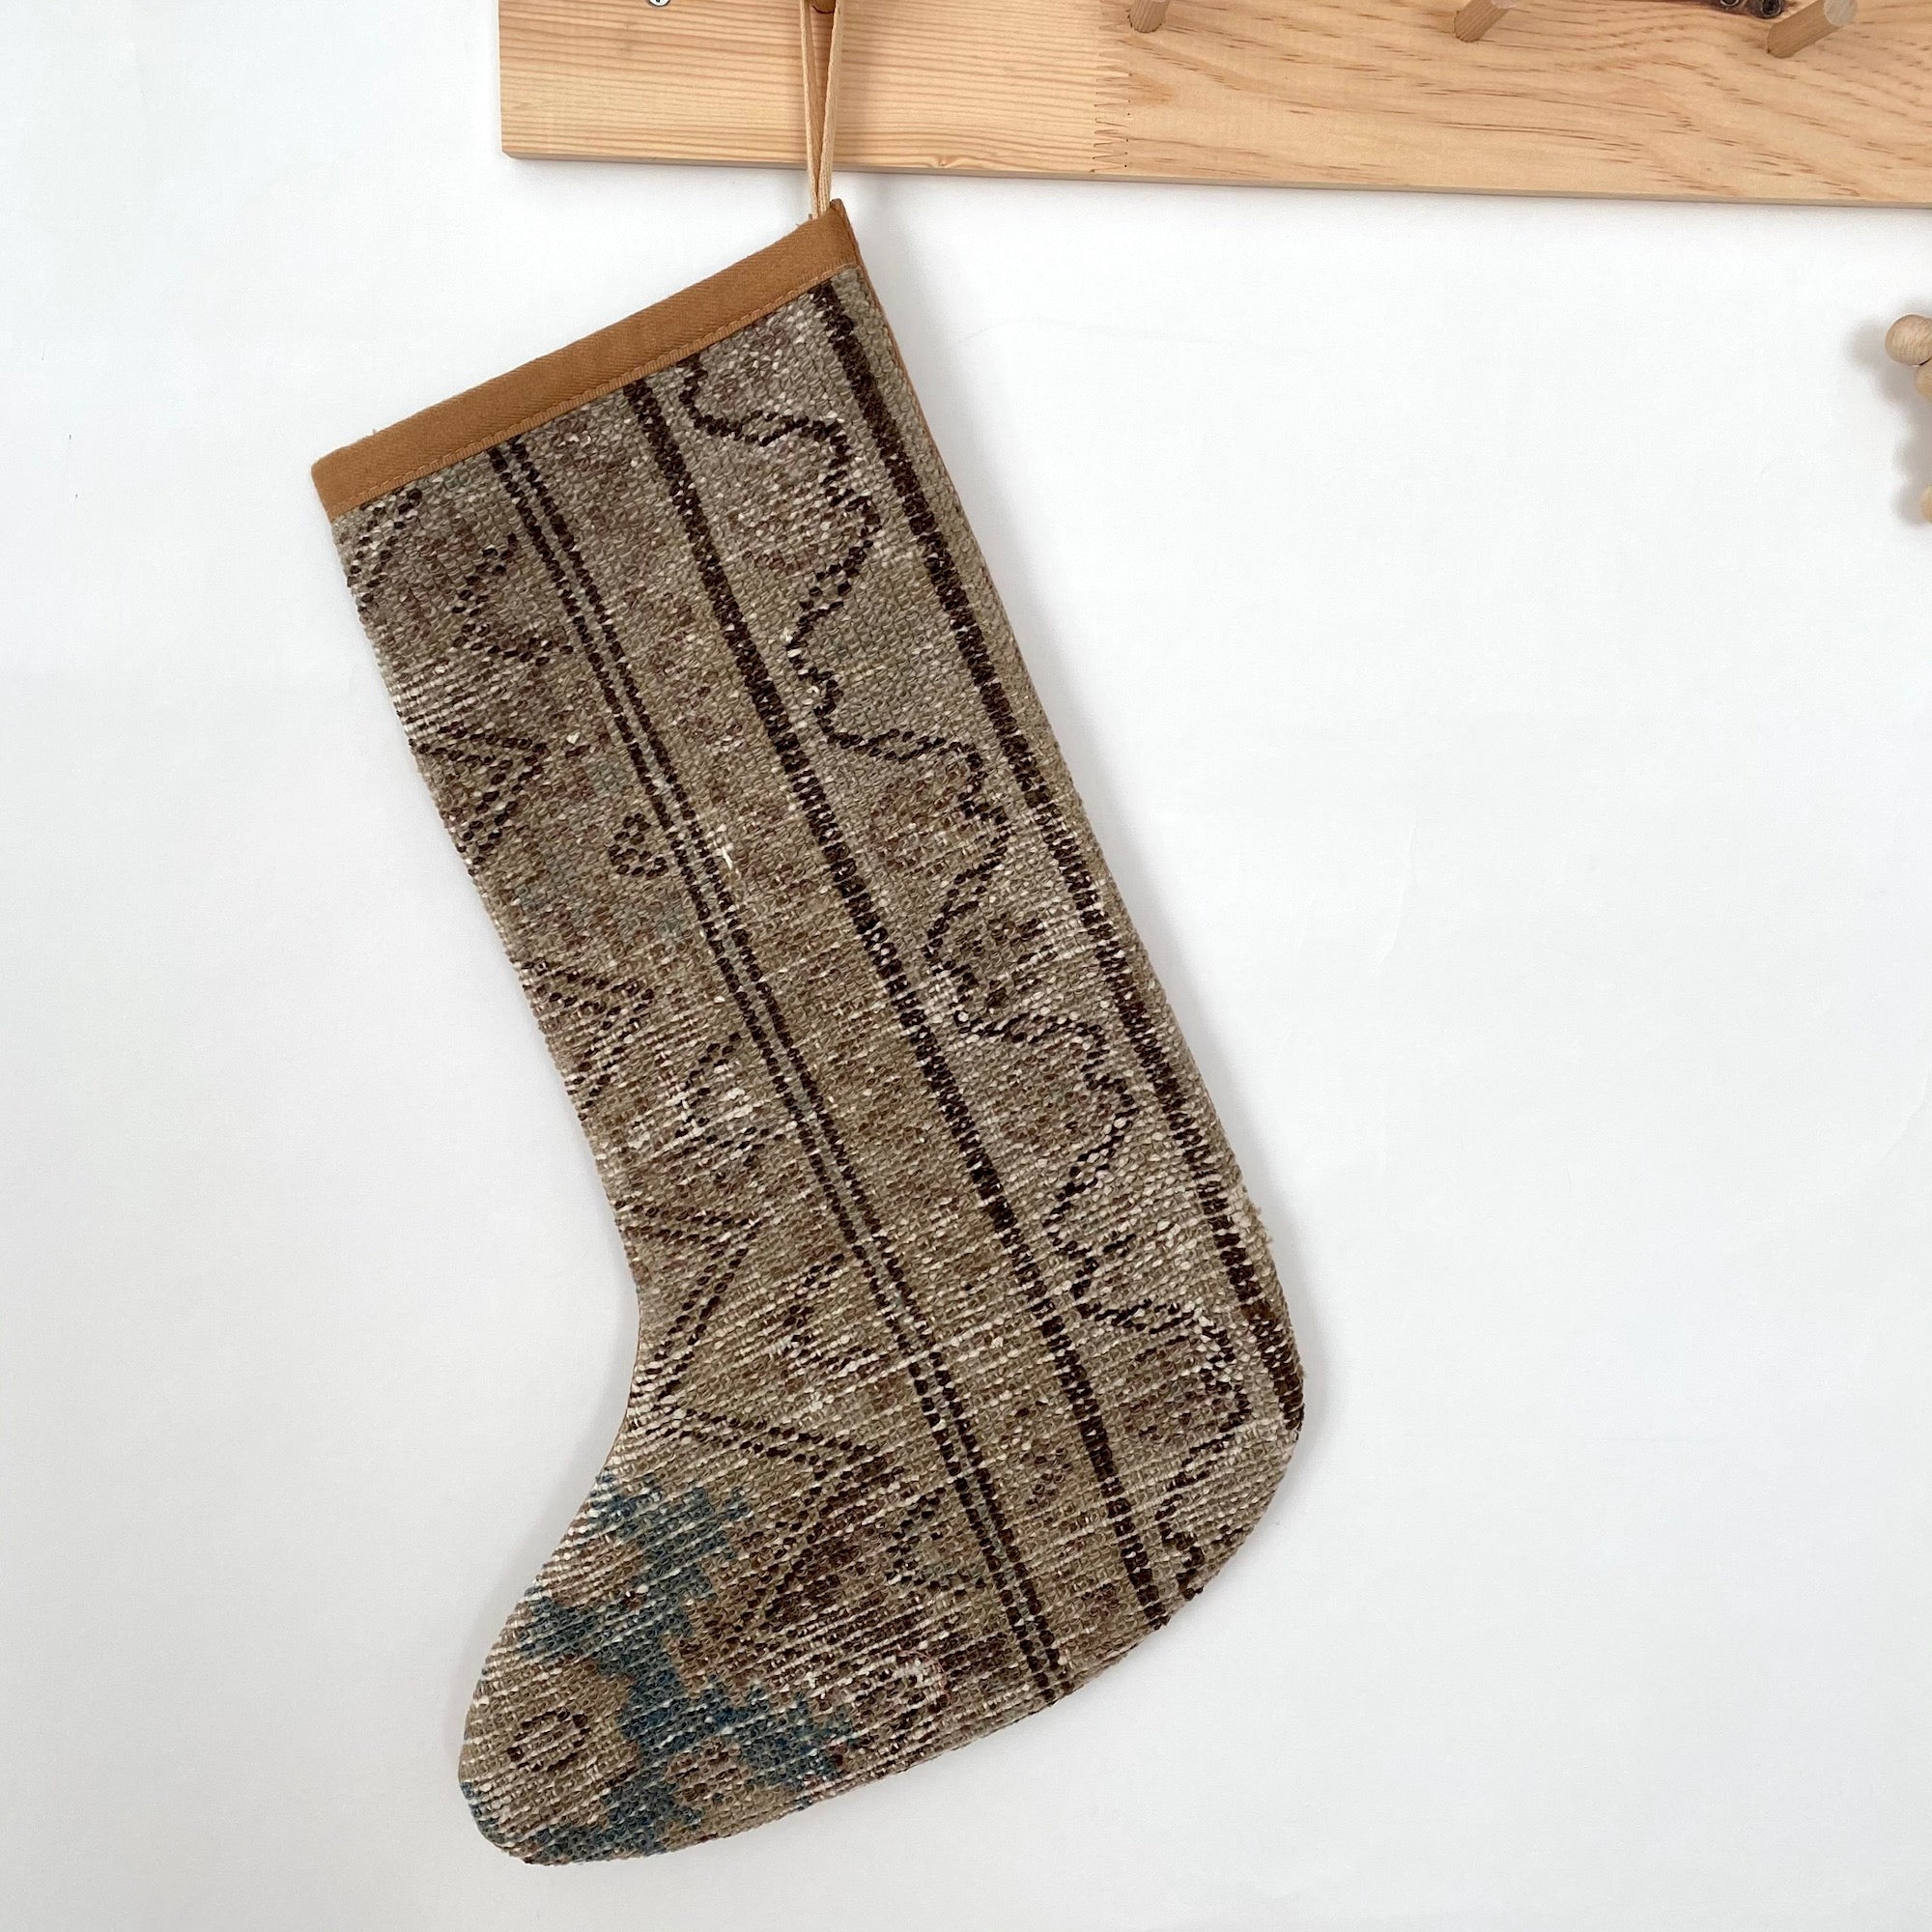 Kadiza - Vintage Stocking - kudenrugs